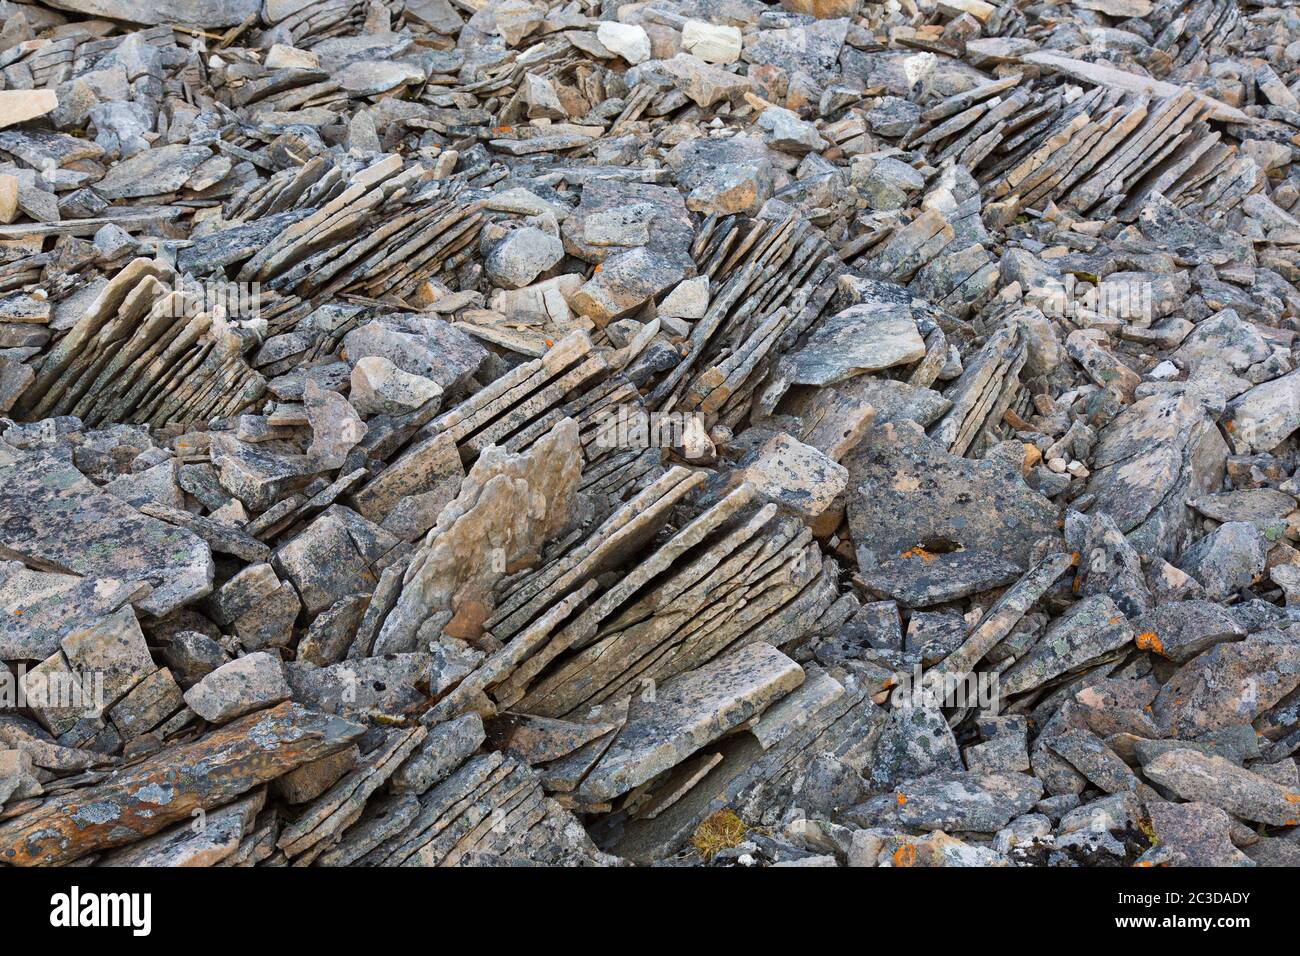 Nahaufnahme von zerbrochenem Sedimentgestein, Schiefer / Schiefer, die durch Frostverwitterung auf Spitzbergen, Norwegen, entlang bestehender Fugen gebrochen wurden Stockfoto